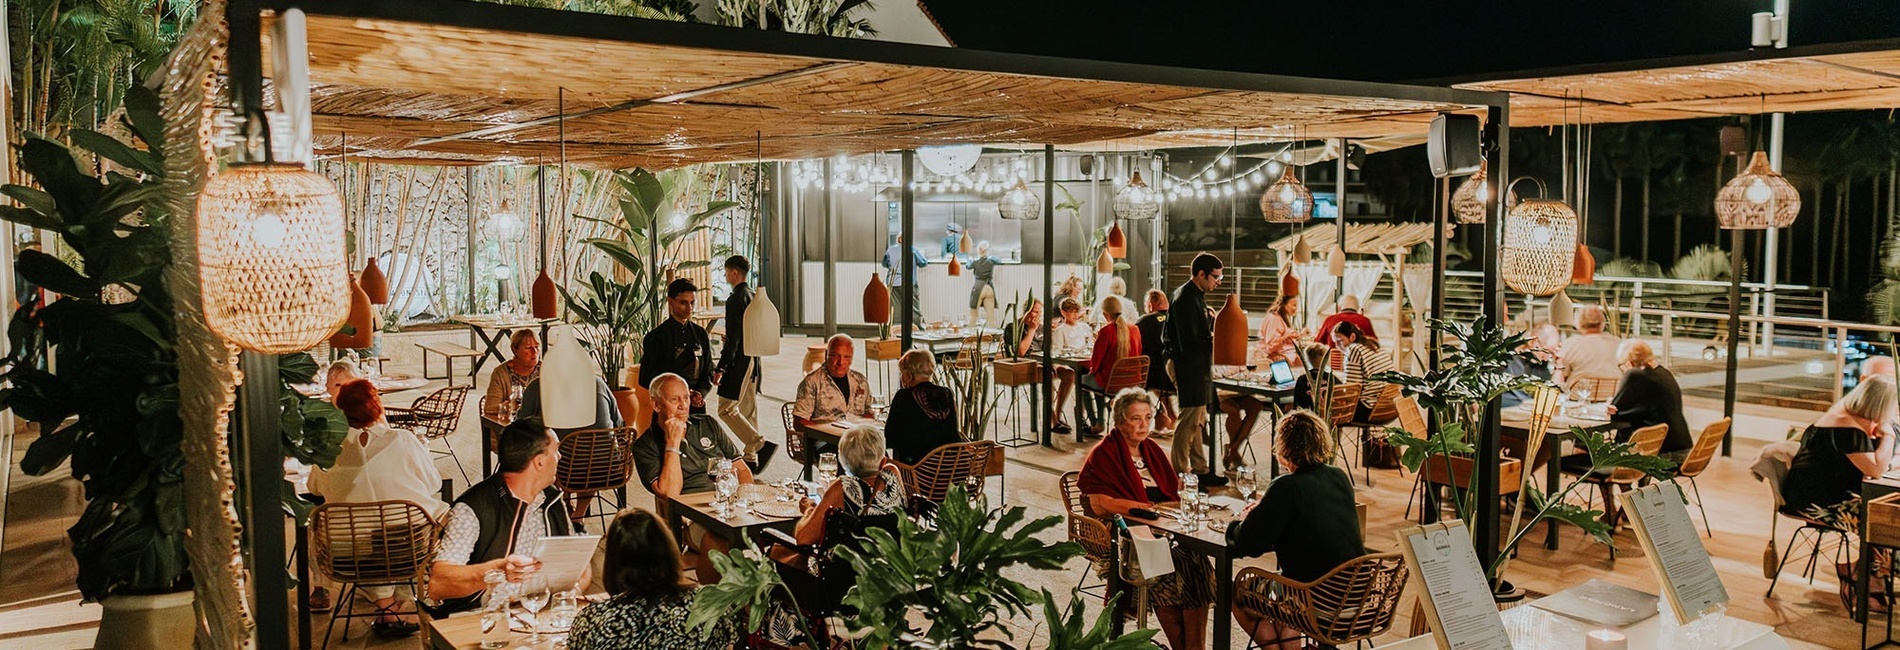 un groupe de personnes assises à des tables dans un restaurant